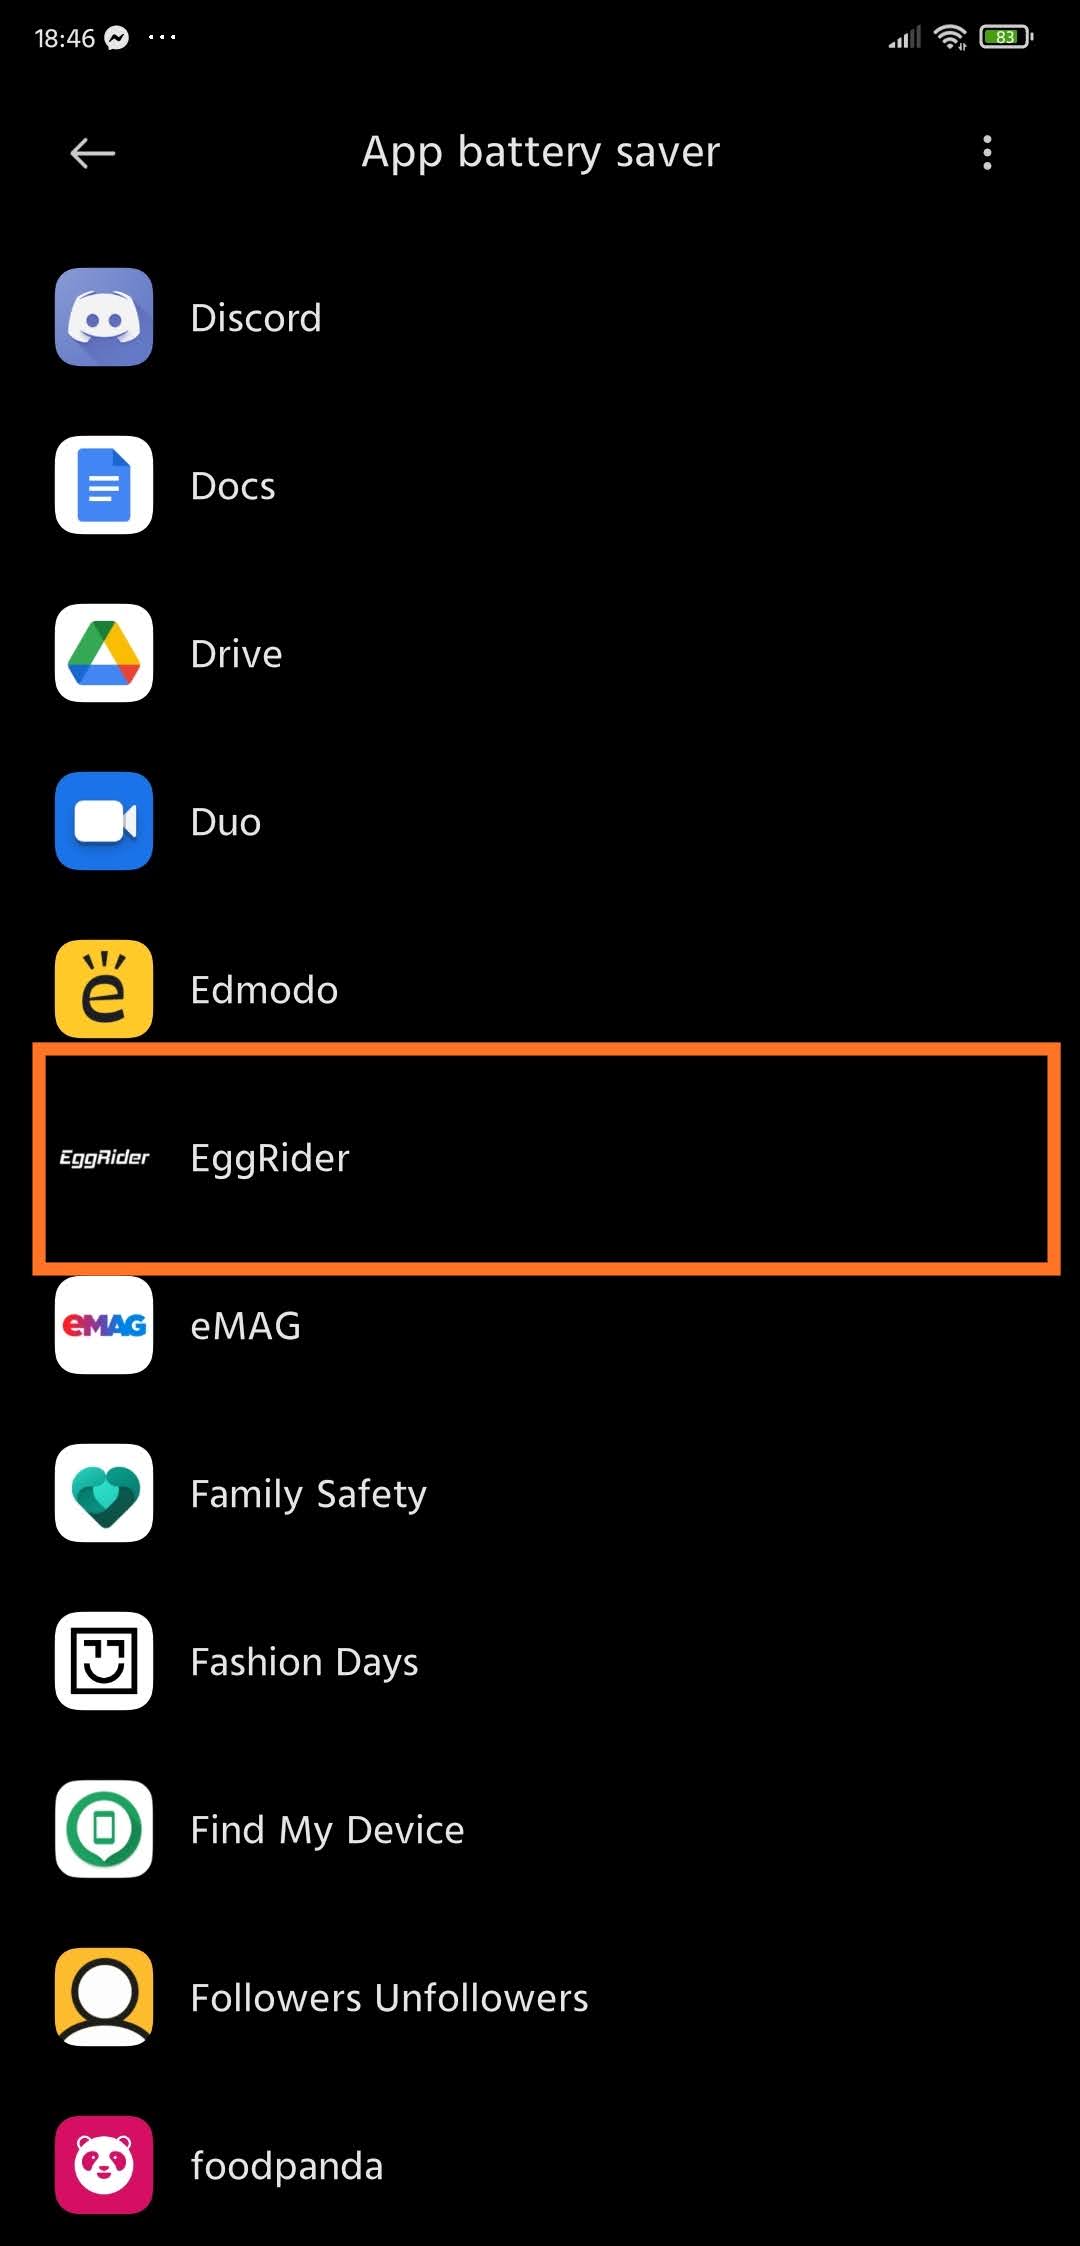 EggRider app allow background miui 5